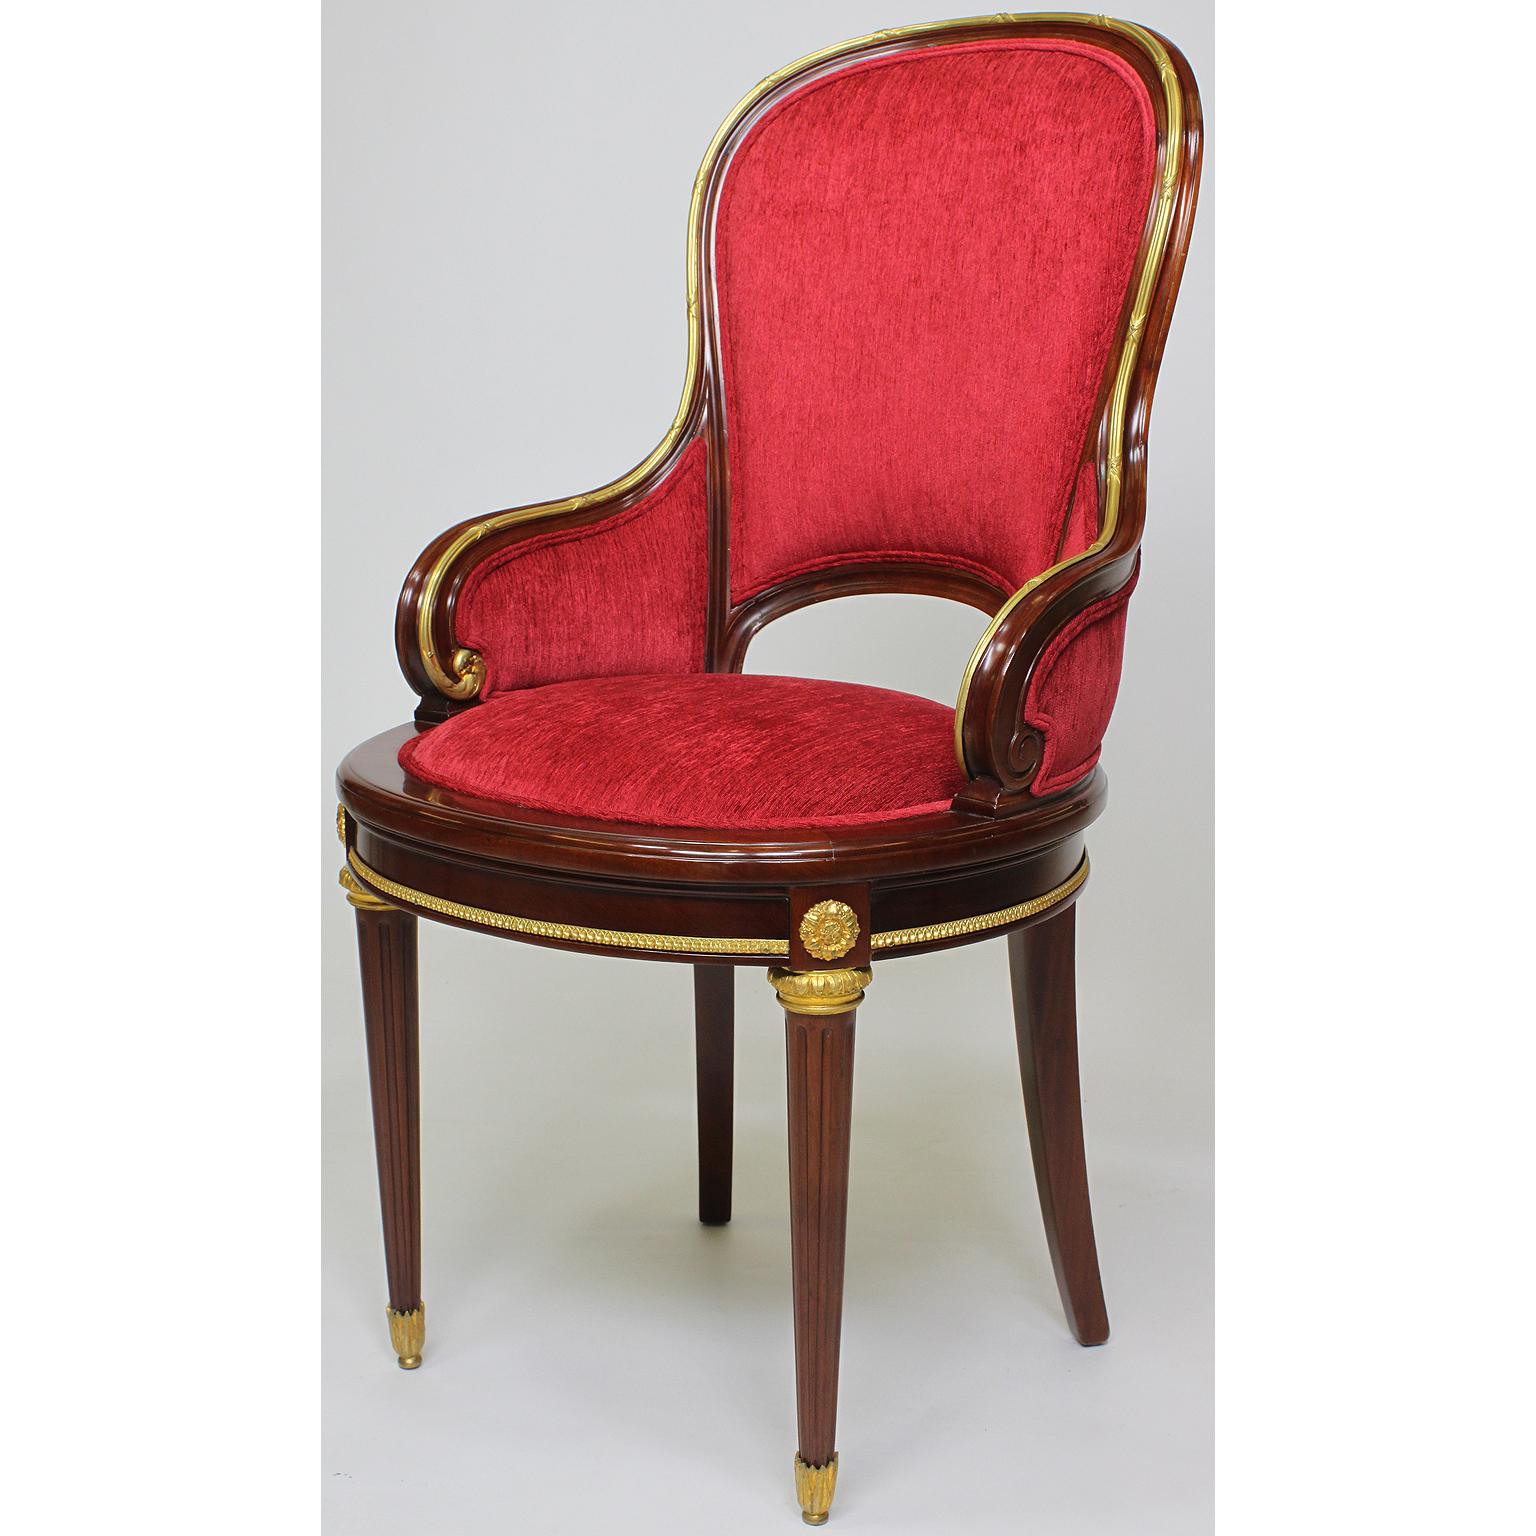 Très bel ensemble de douze chaises de salle à manger françaises de style Louis XVI de la Belle Époque, du 19e au 20e siècle, en acajou et ornementées de bronze doré. Les dossiers et les côtés arrondis et paddés, surmontés d'une garniture et de